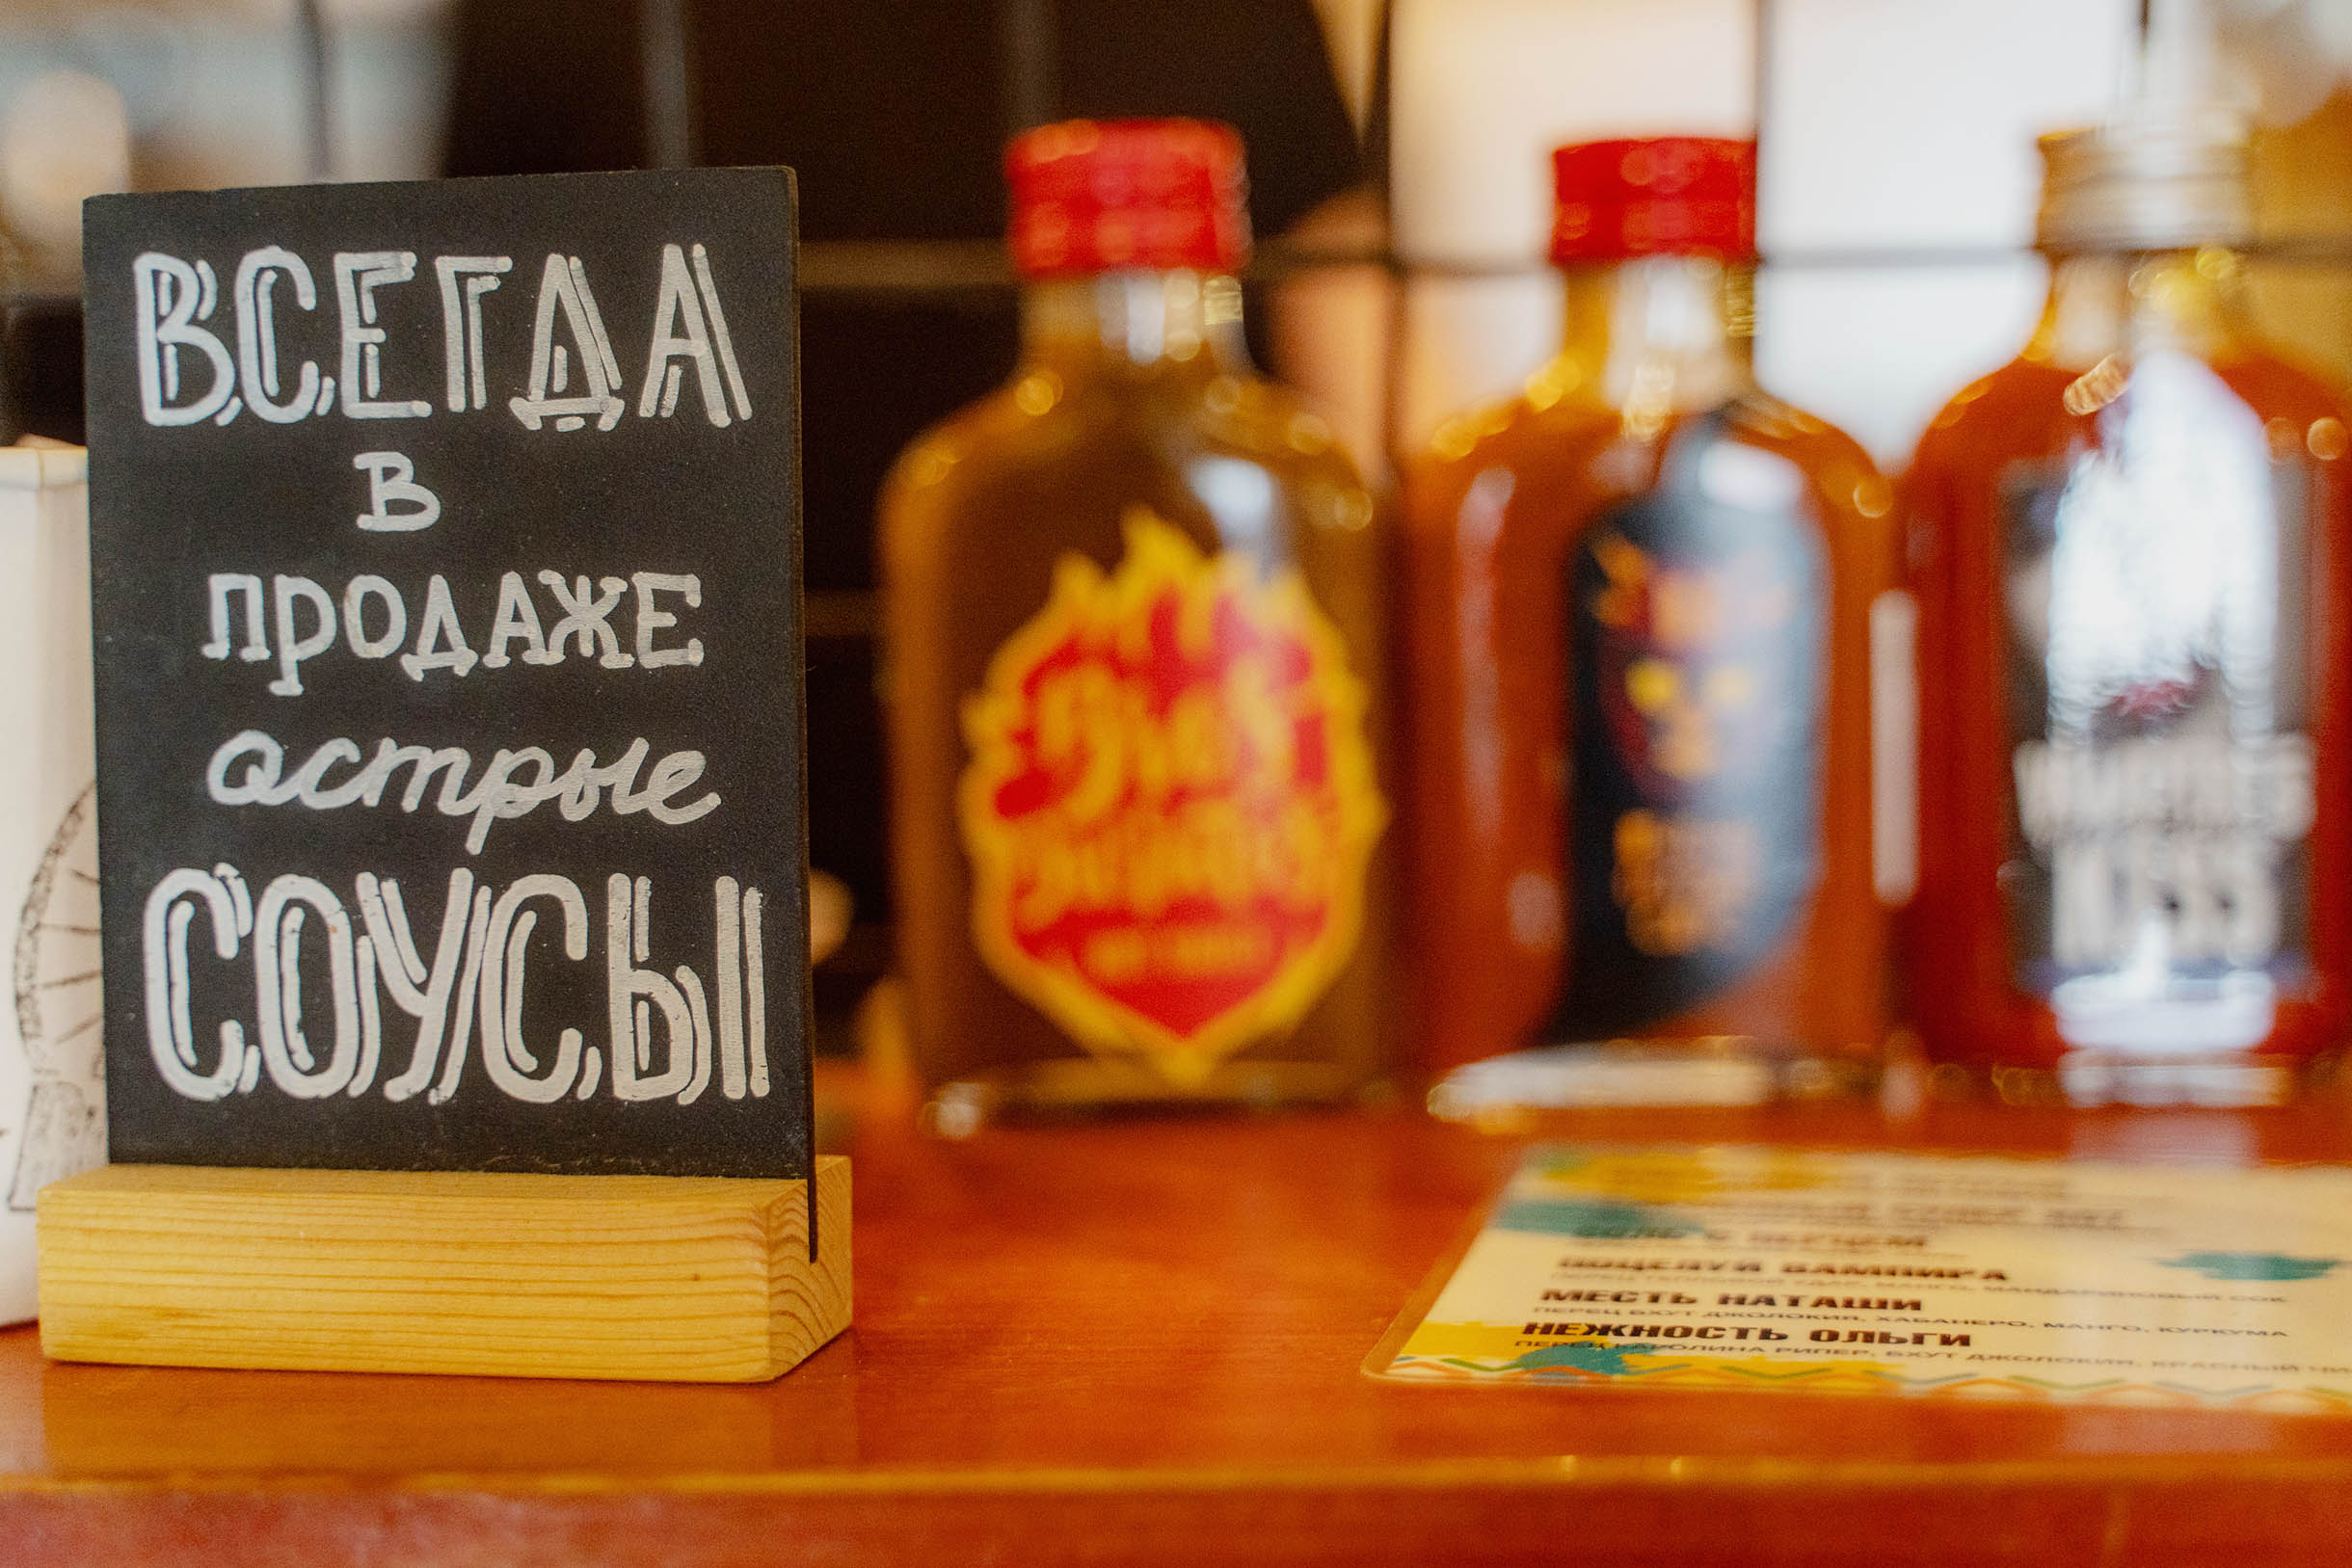 В кафе продают острые соусы собственного производства с креативными названиями типа «Месть Наташи» или «Нежность Ольги»